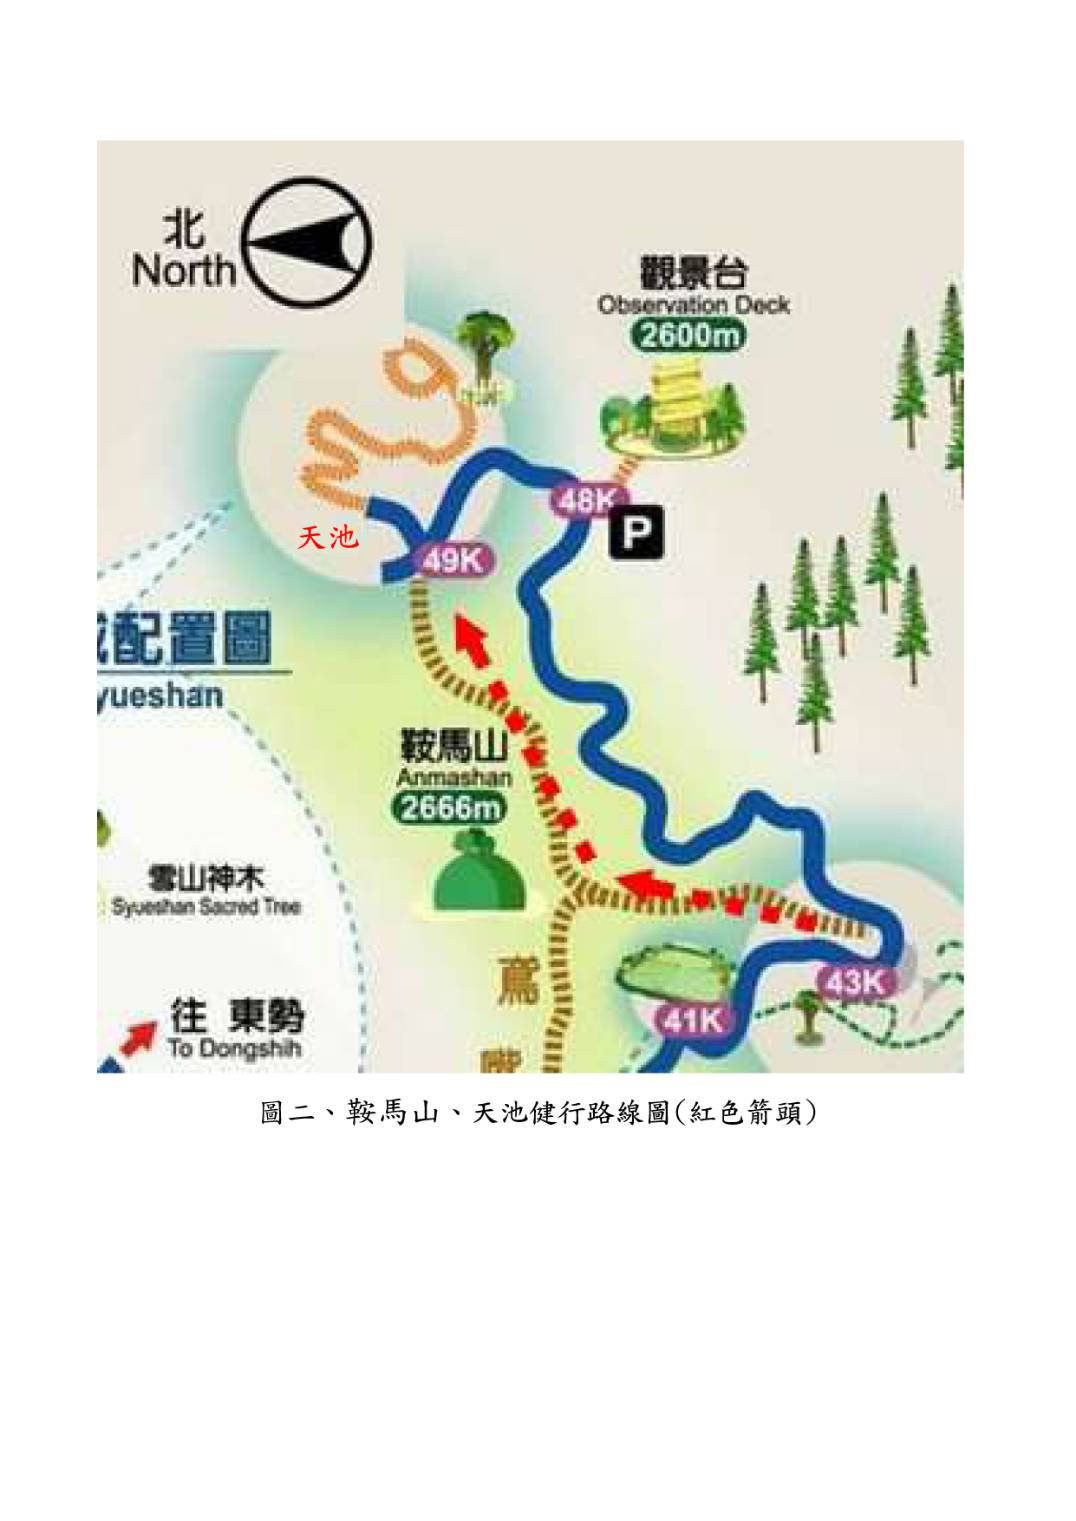 2020年11月21日(六)大雪山國家森林步道、天池、鞍馬山健行一日遊